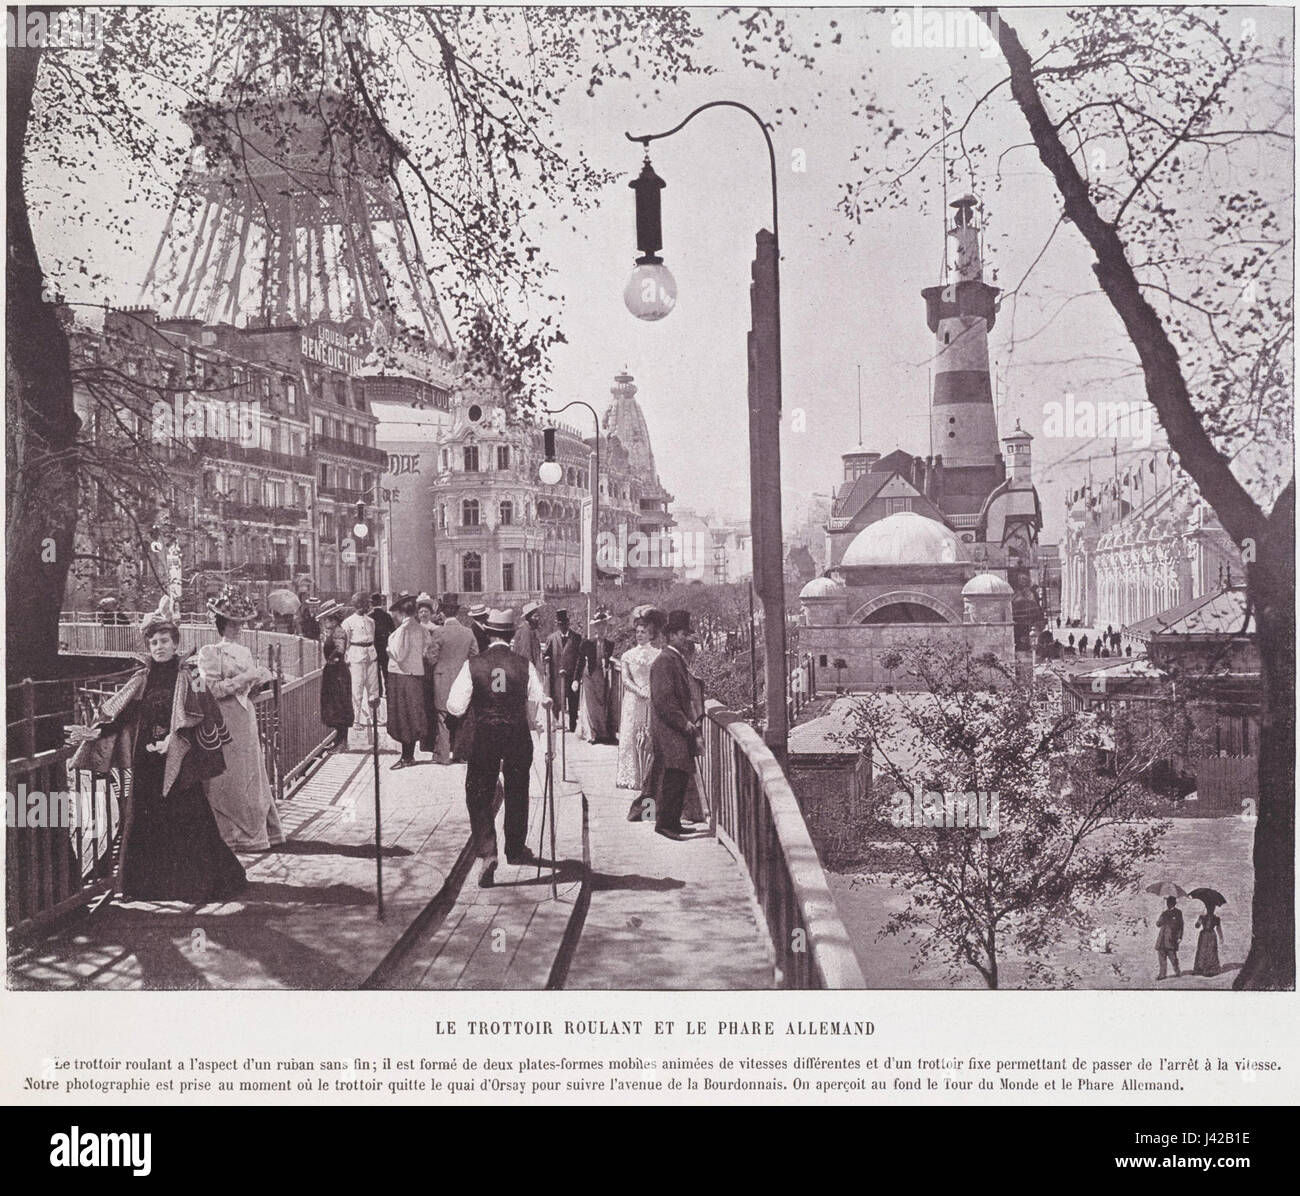 Le trottoir roulant et le phare allemand, Exposition Universelle 1900 Stock Photo